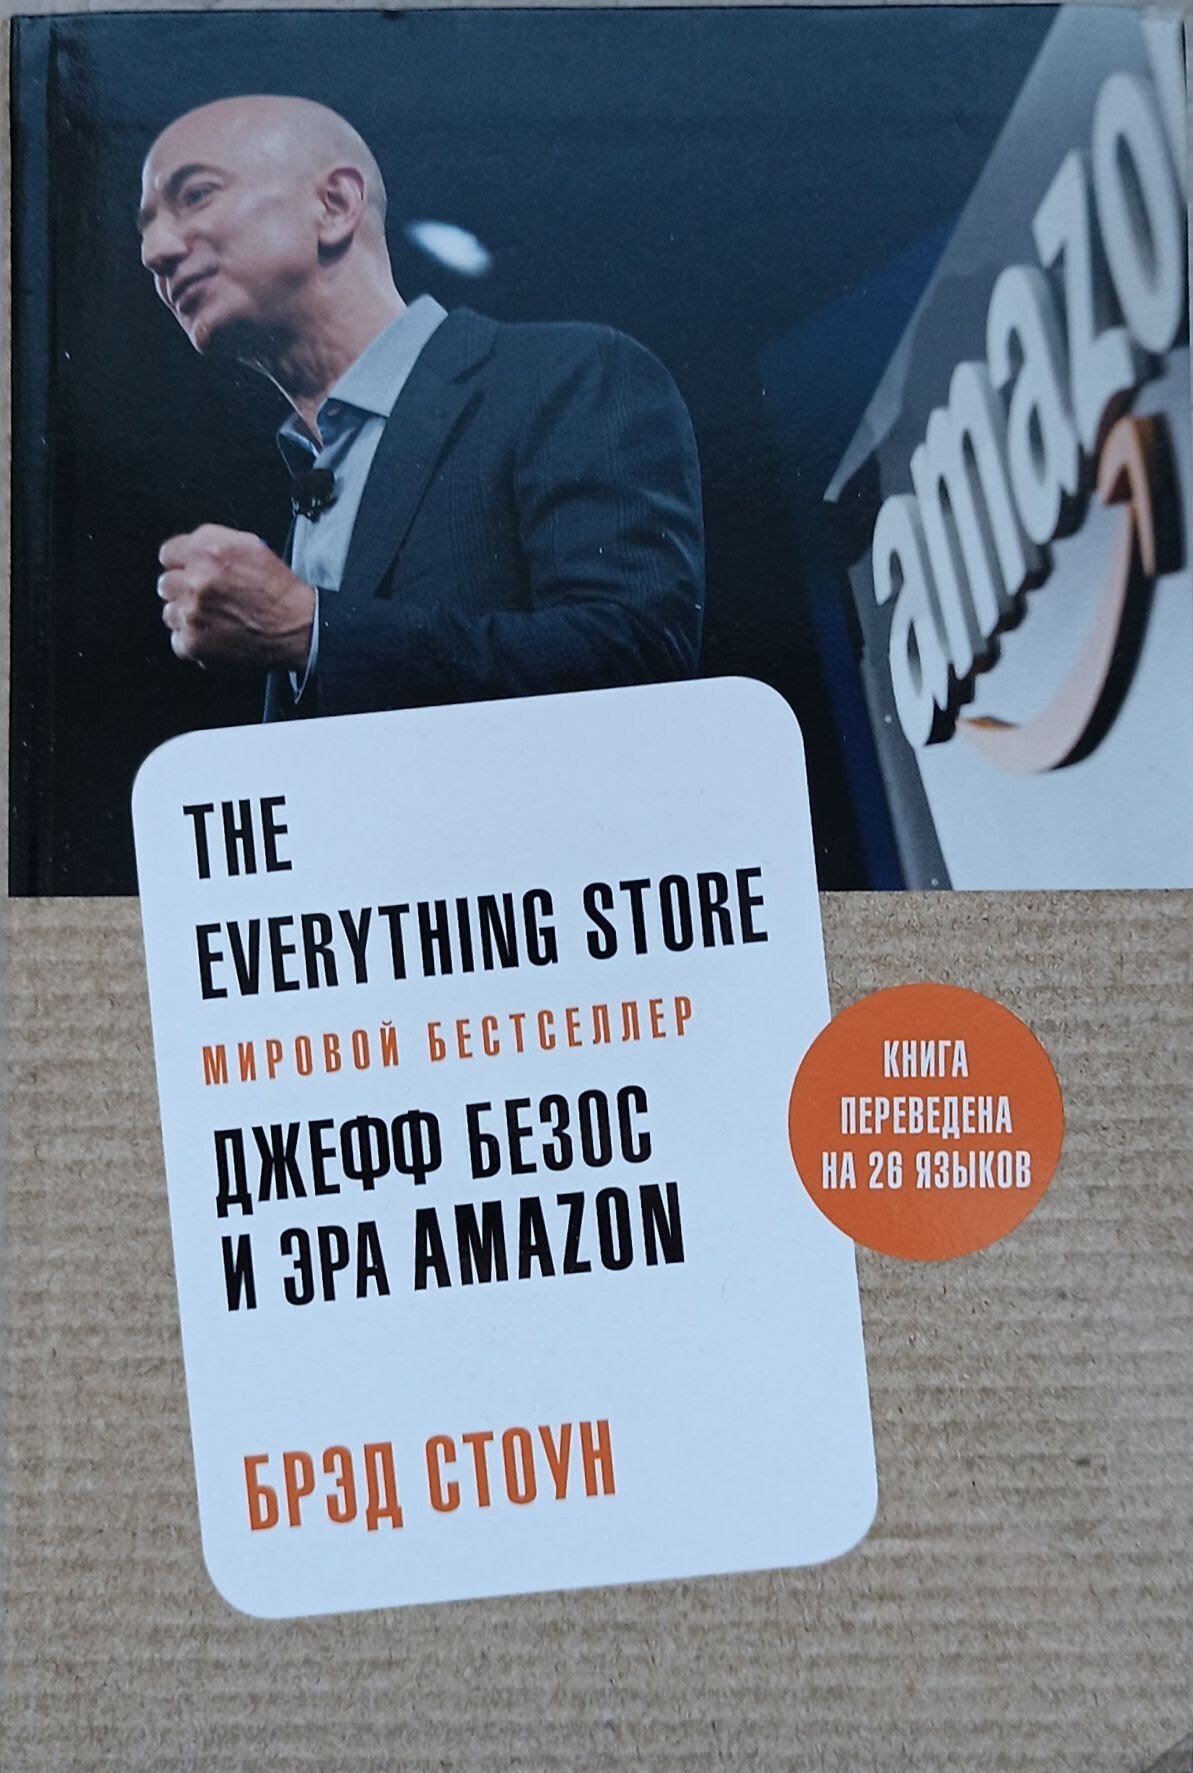 Стоун Б. "The Everything Store. Джефф Безос и эра Amazon"